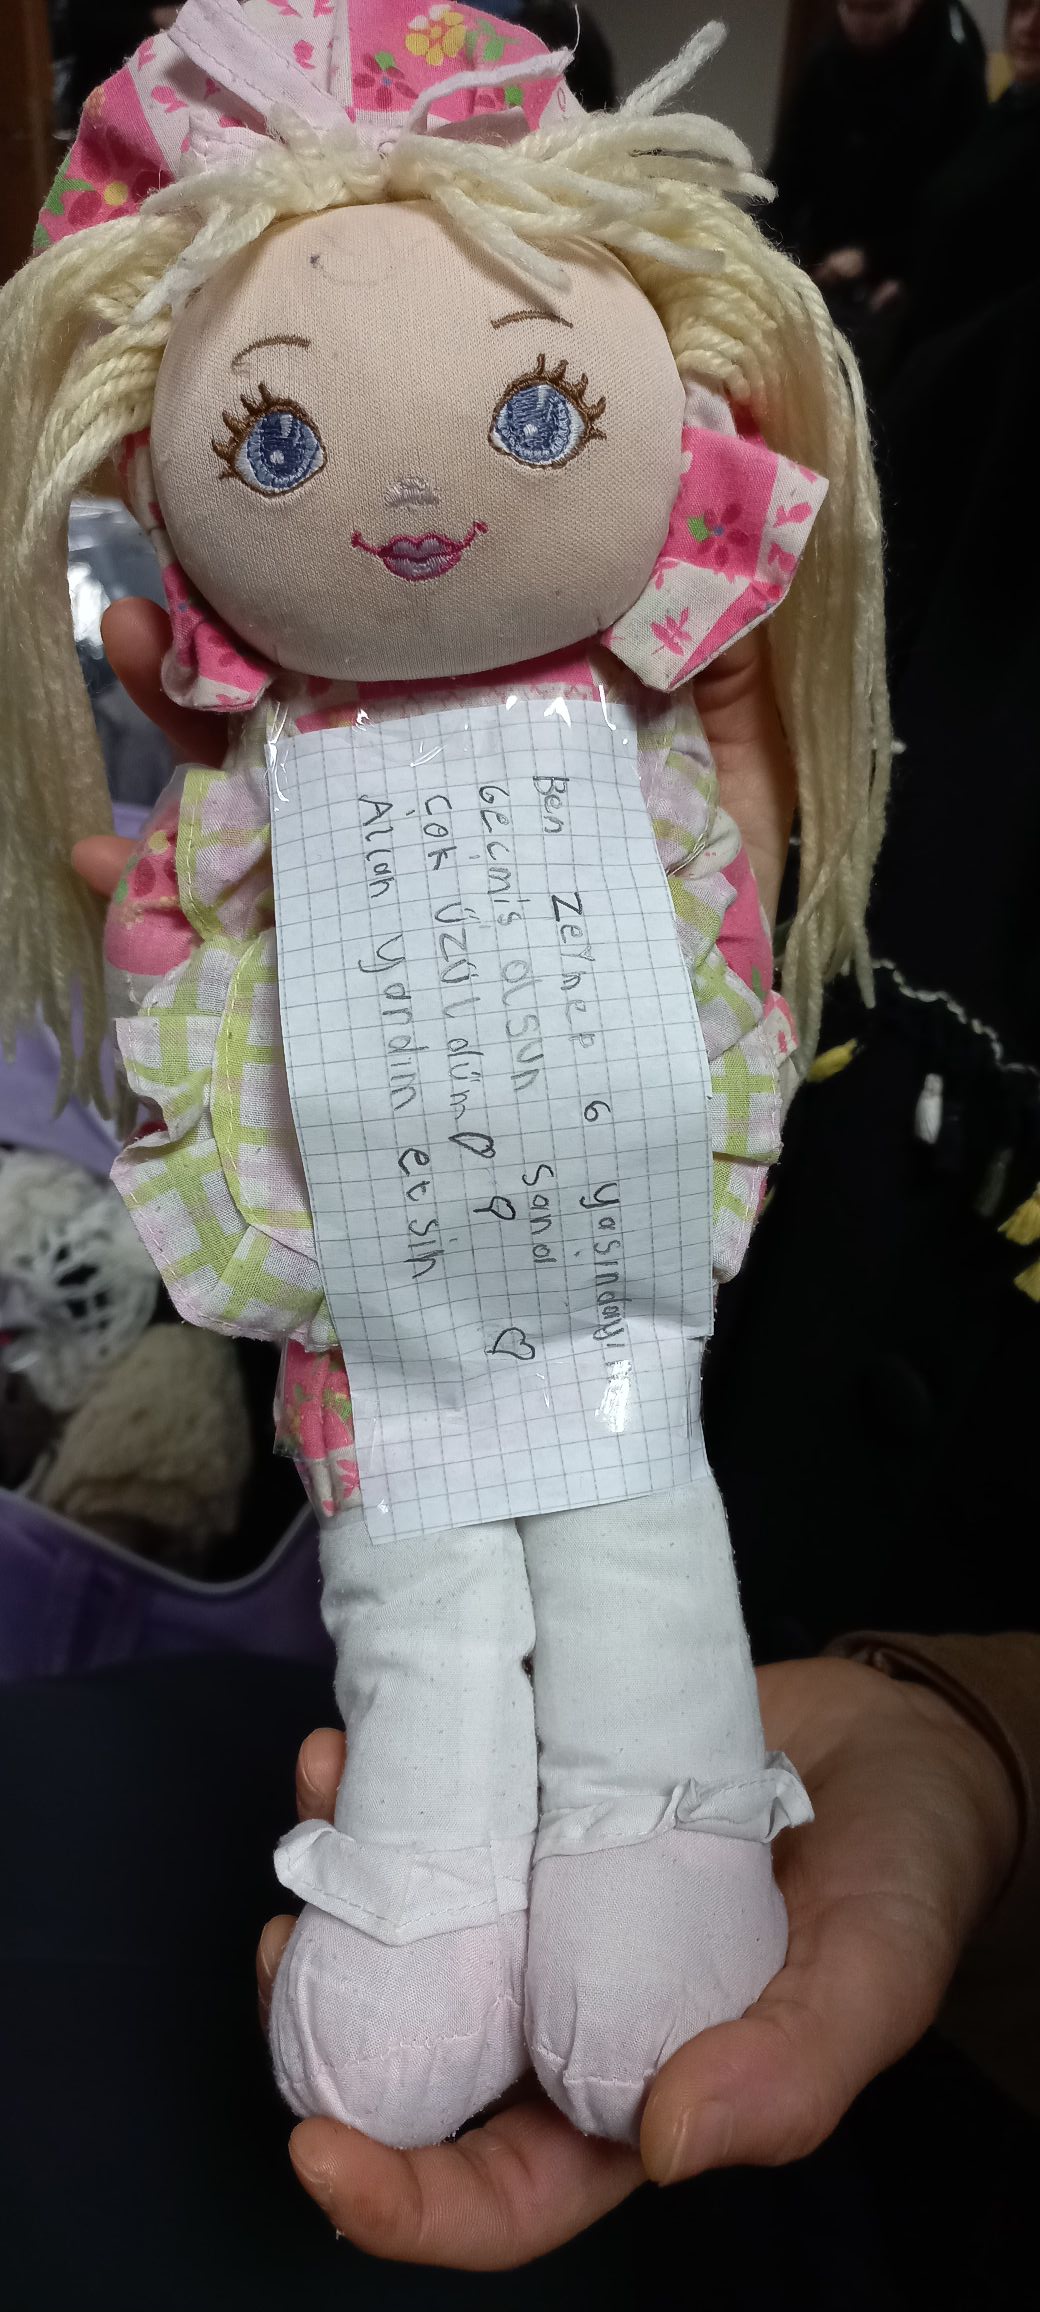 Altı yaşındaki Zeynep oyuncak bebeğinin üzerine not yazarak deprem bölgesine gönderdi